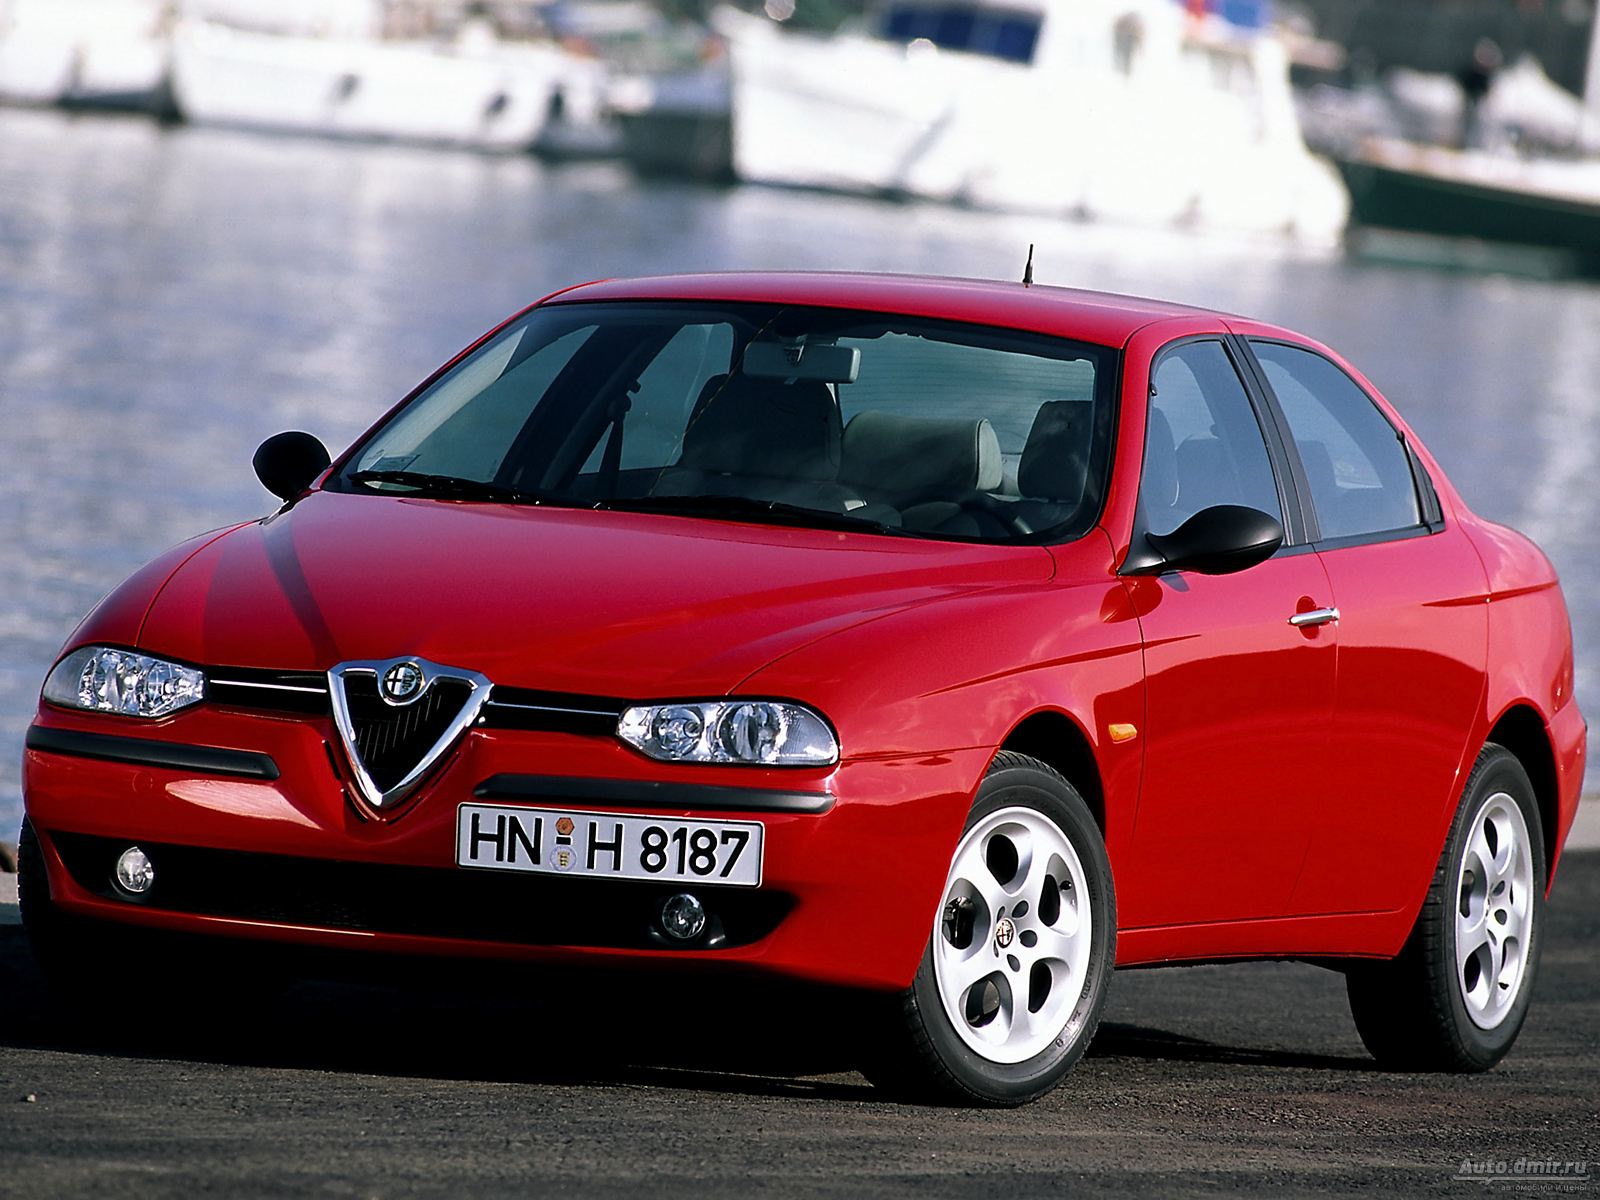  10  Alfa Romeo  Alfa Romeo 147 16  2006       DRIVE2